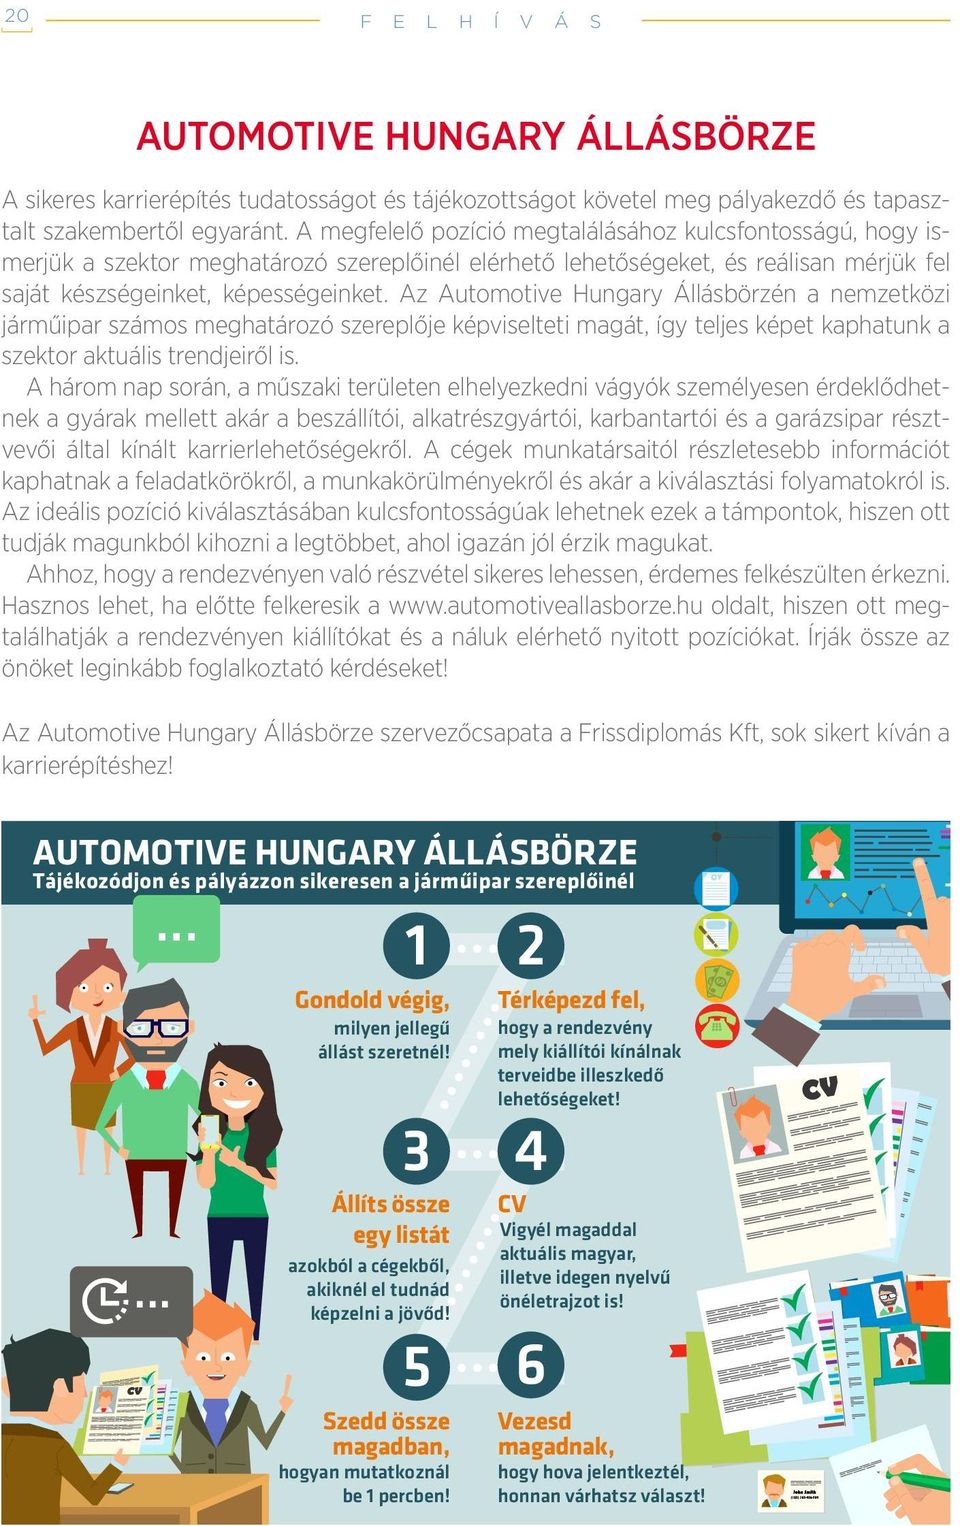 Az Automotive Hungary Állásbörzén a nemzetközi járműipar számos meghatározó szereplője képviselteti magát, így teljes képet kaphatunk a szektor aktuális trendjeiről is.